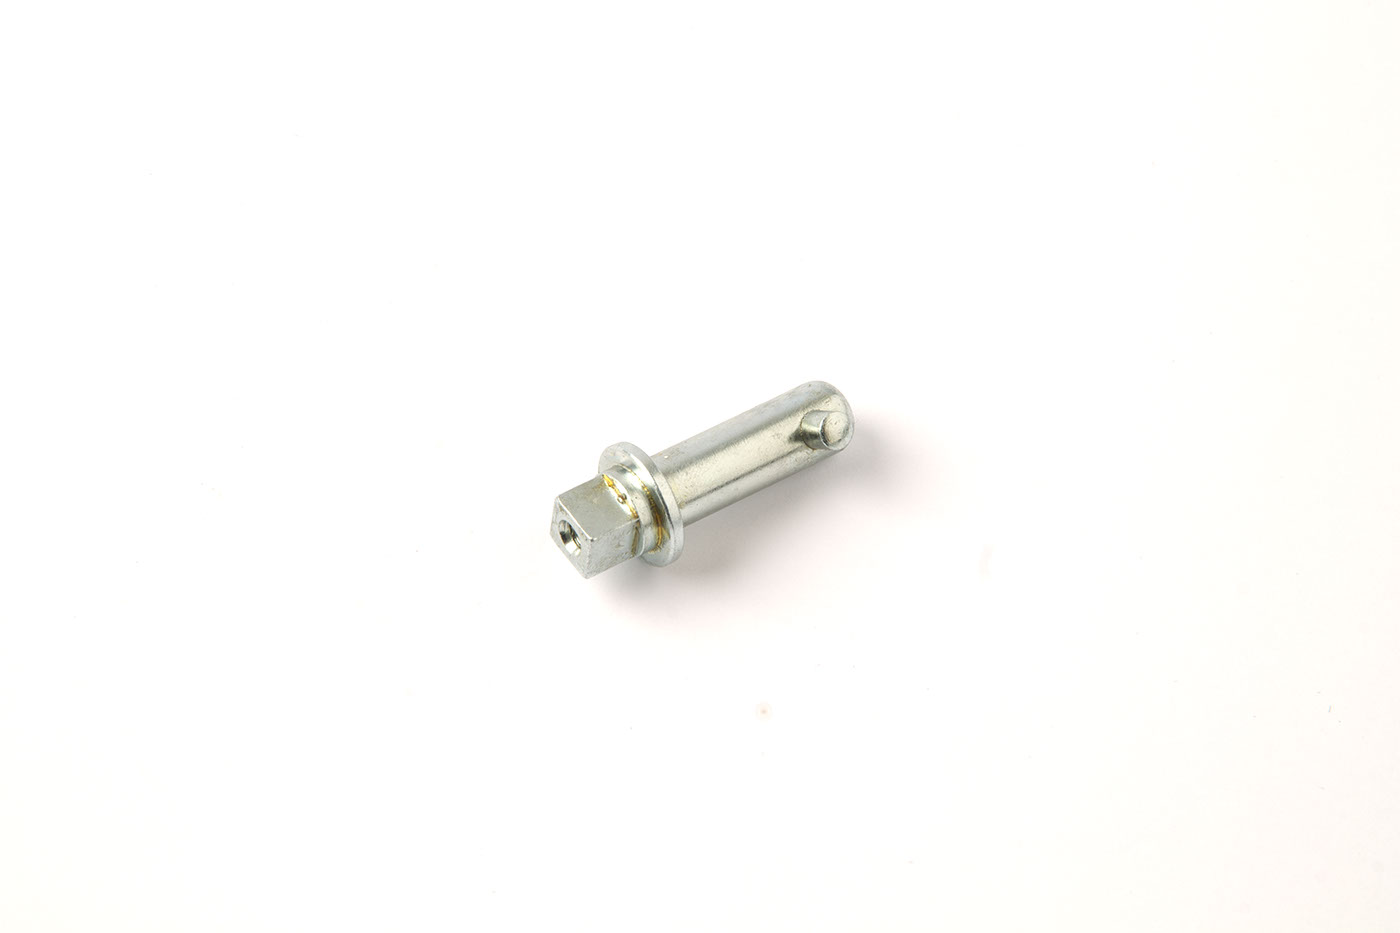 Sicherungsstift
Locking pin
Goupille d'arrêt
Aprendiz de ase